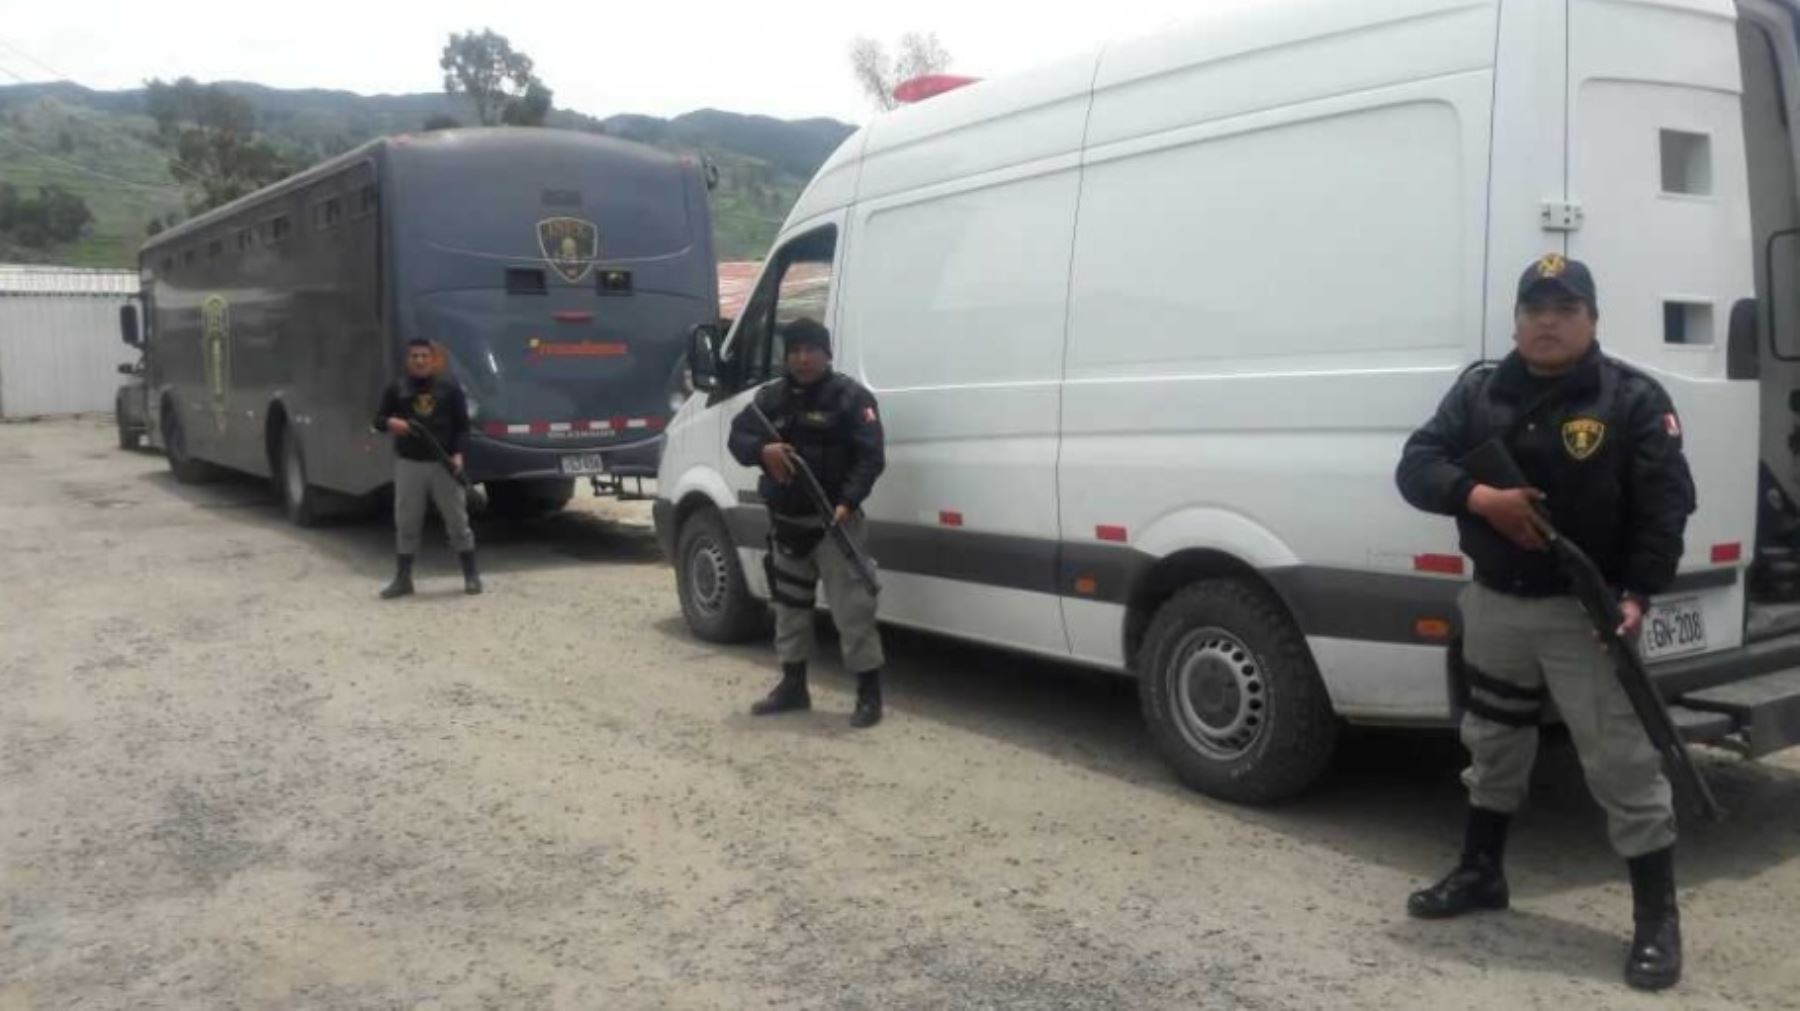 El Instituto Nacional Penitenciario (Inpe) trasladó, bajo estrictas medidas de seguridad, a 14 internos del penal de Cusco y otro de Abancay hacia establecimientos penitenciarios de mayor seguridad.